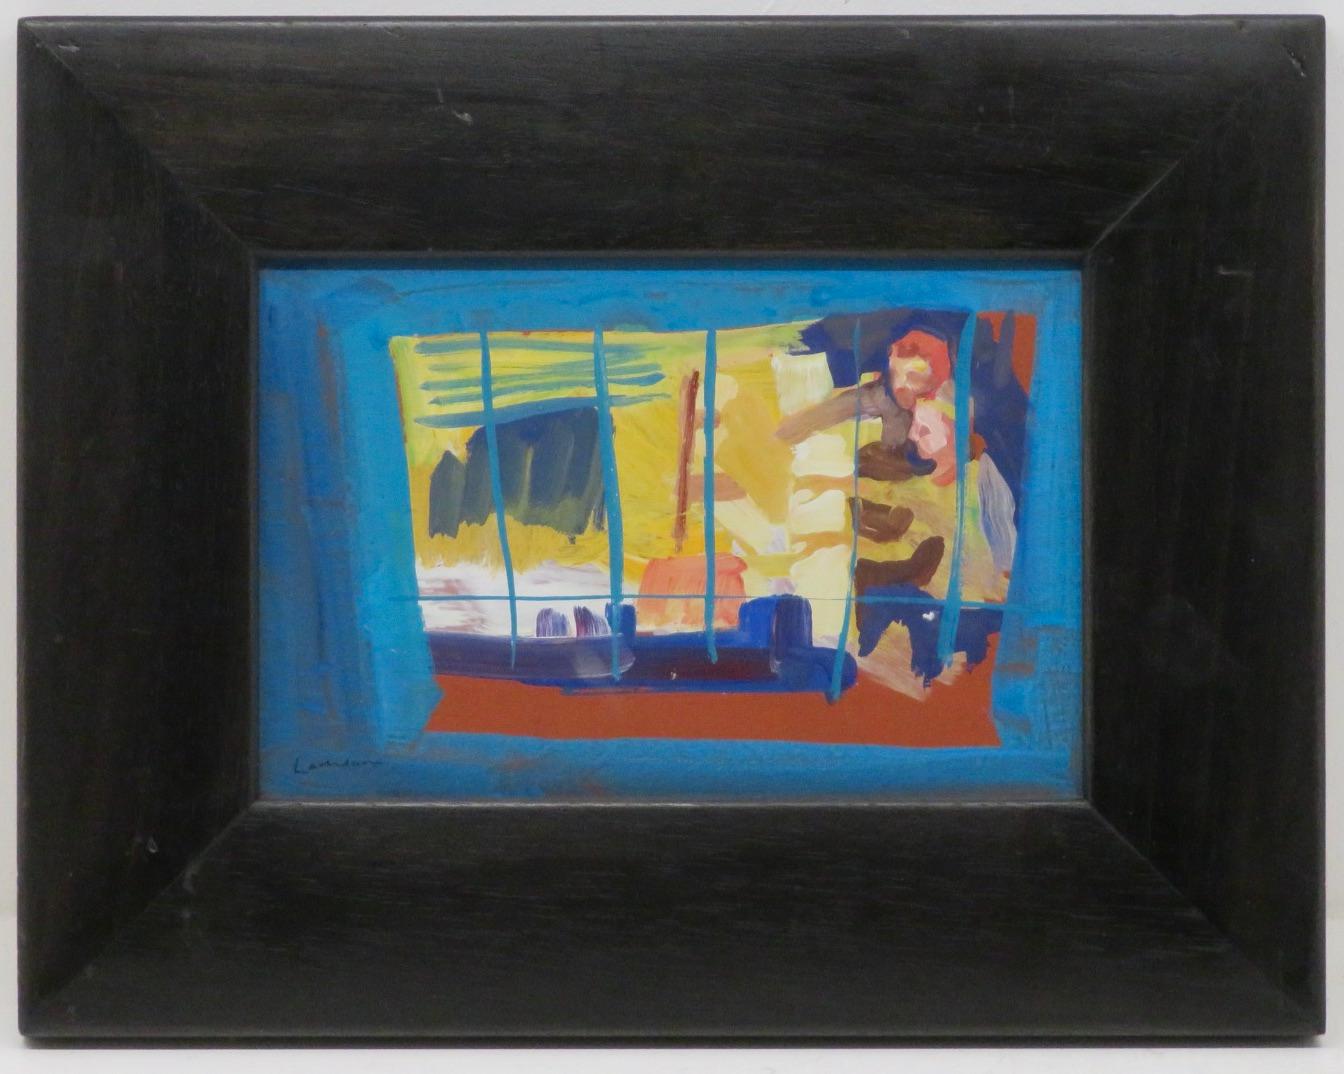 Peinture à l'huile originale de Lachlan Goudie ROI intitulée "The Piano Lesson" mesurant 39cm x 30cm, cadre inclus. Signé en bas à gauche. Goudie vit et travaille à Londres. Il expose régulièrement en solo à New York, Londres et Glasgow. Le champ